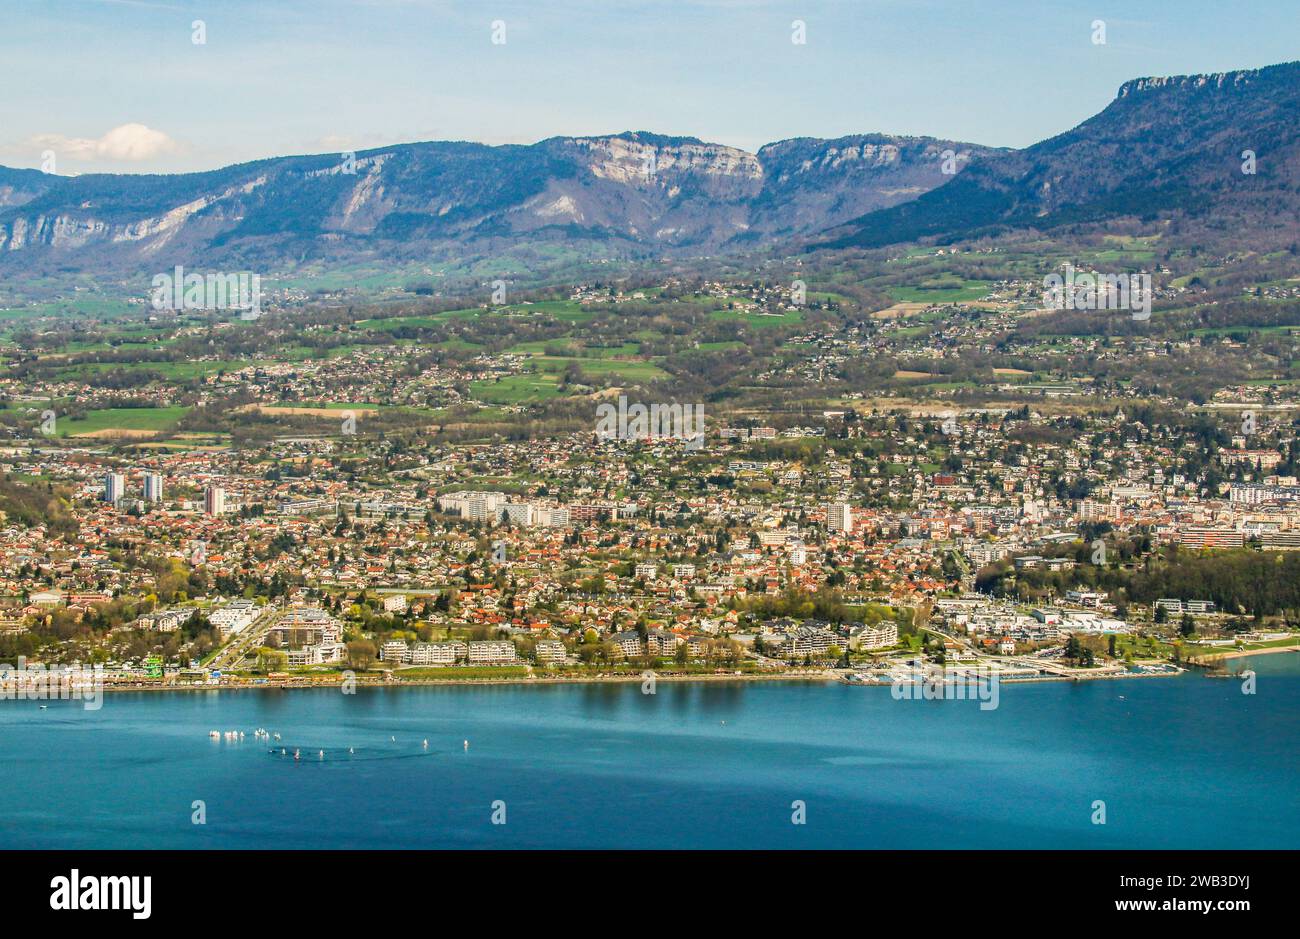 Die Stadt Aix-les-Bains, eine Thermalstation und der See du Bourget, Savoie, Region Auvergne-Rhône-Alpes. Frankreich Stockfoto